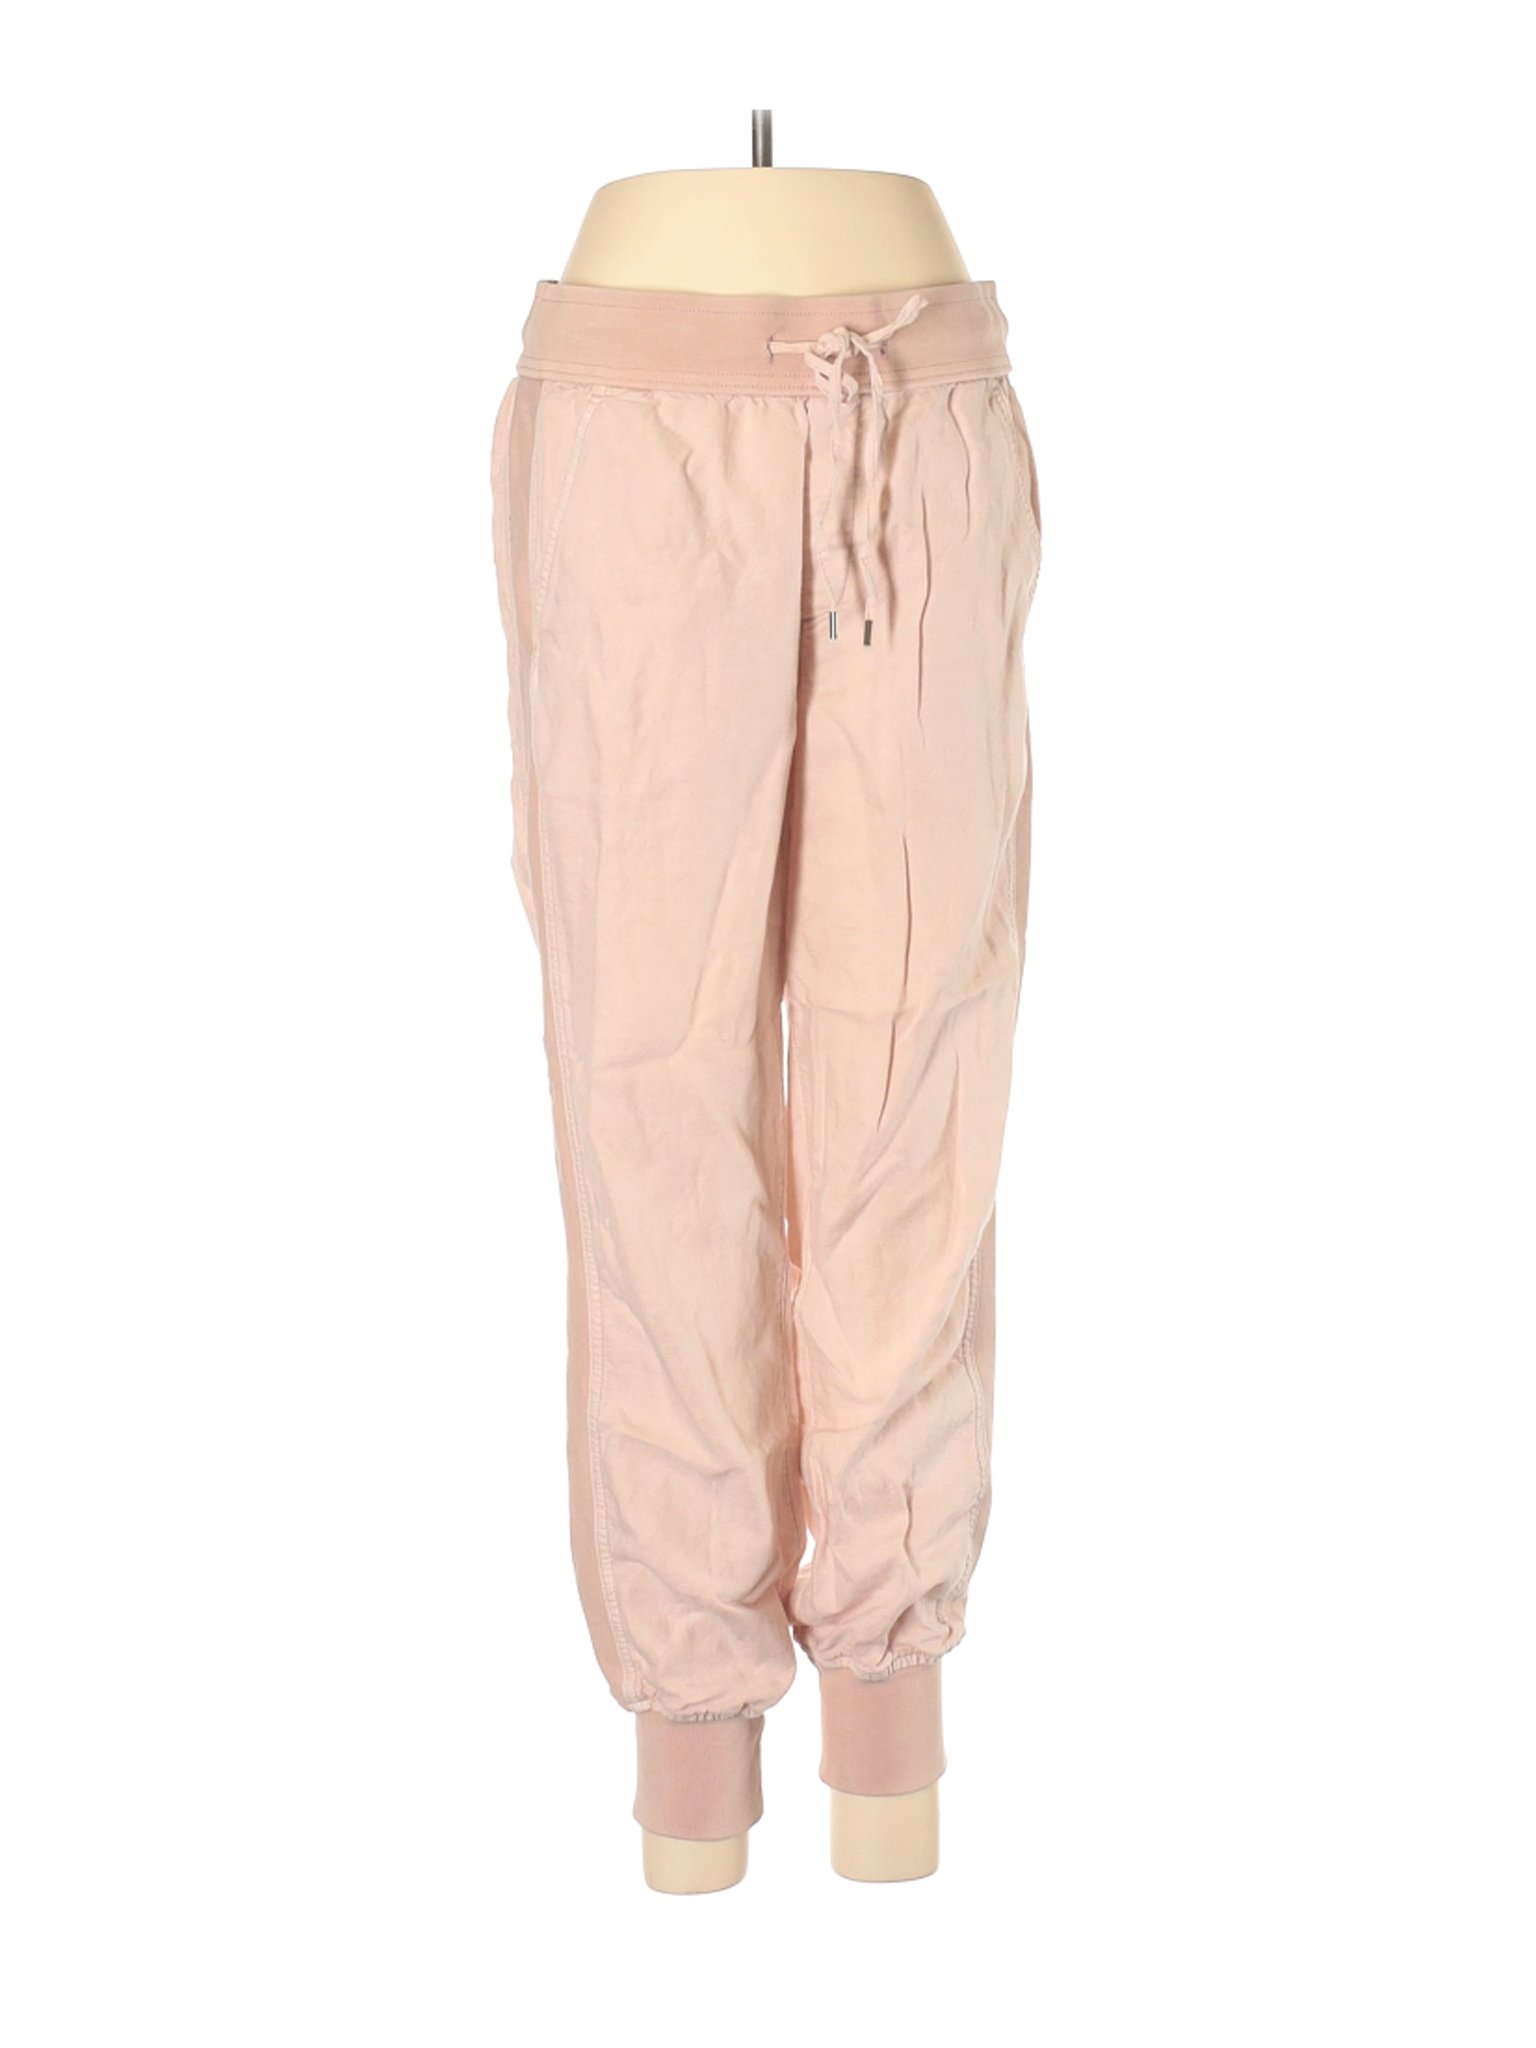 Gap Women Brown Linen Pants S | eBay